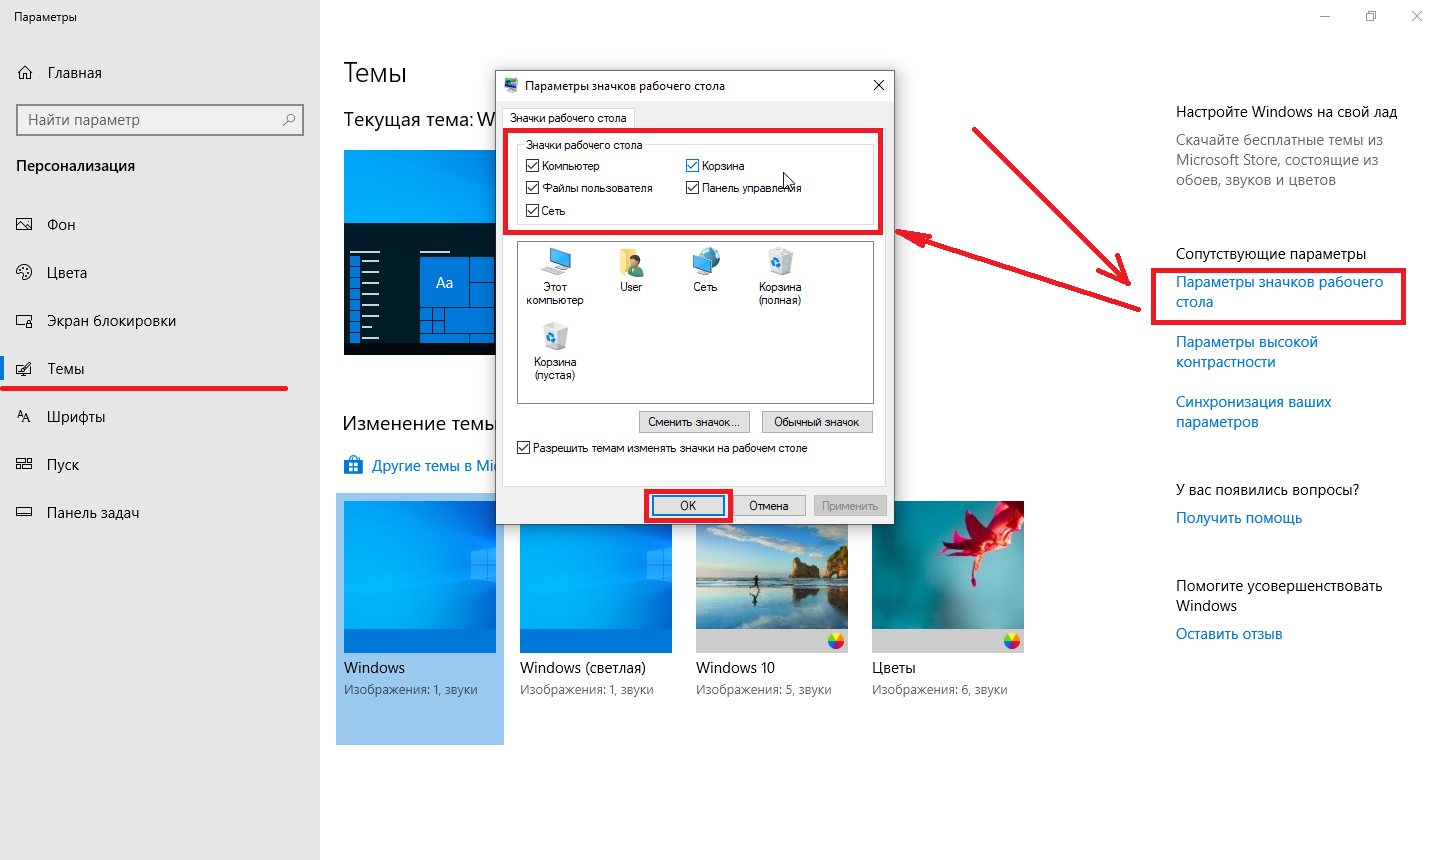 Как перенести значок на экран. Параметры значков рабочего стола в Windows 10. Изменение рабочего стола Windows 10. Изменение значков рабочего стола. Редактировать значки рабочего стола.